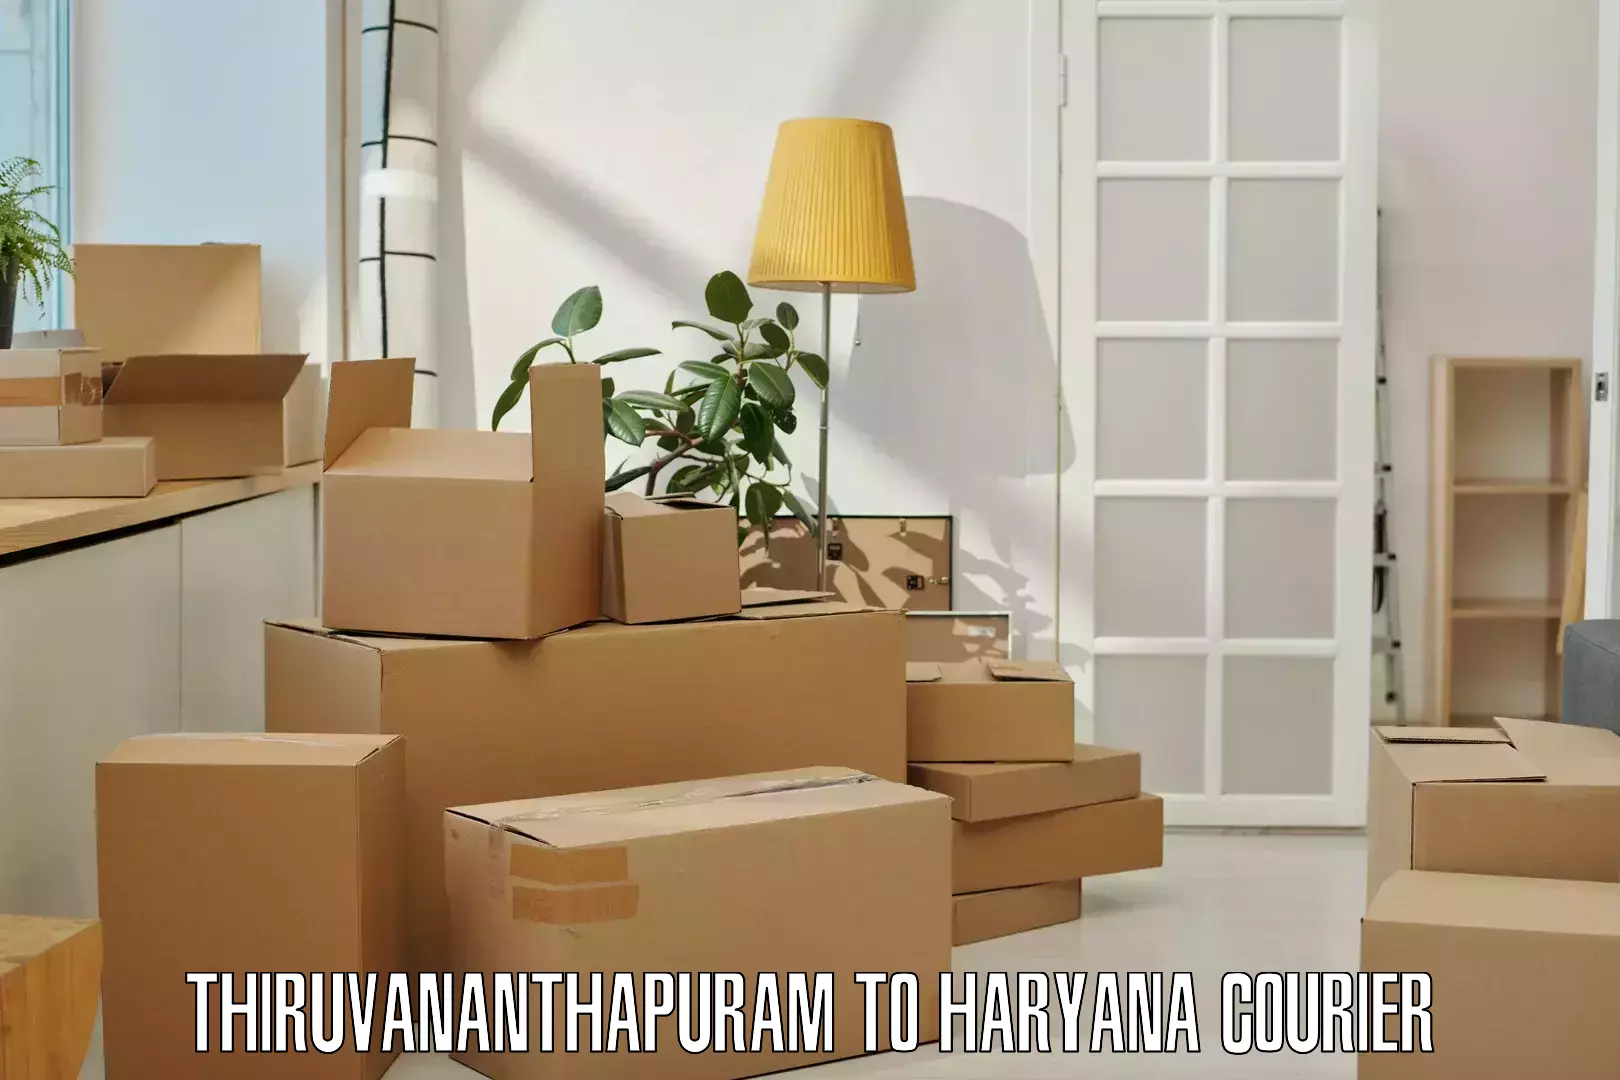 Efficient cargo handling Thiruvananthapuram to Pehowa